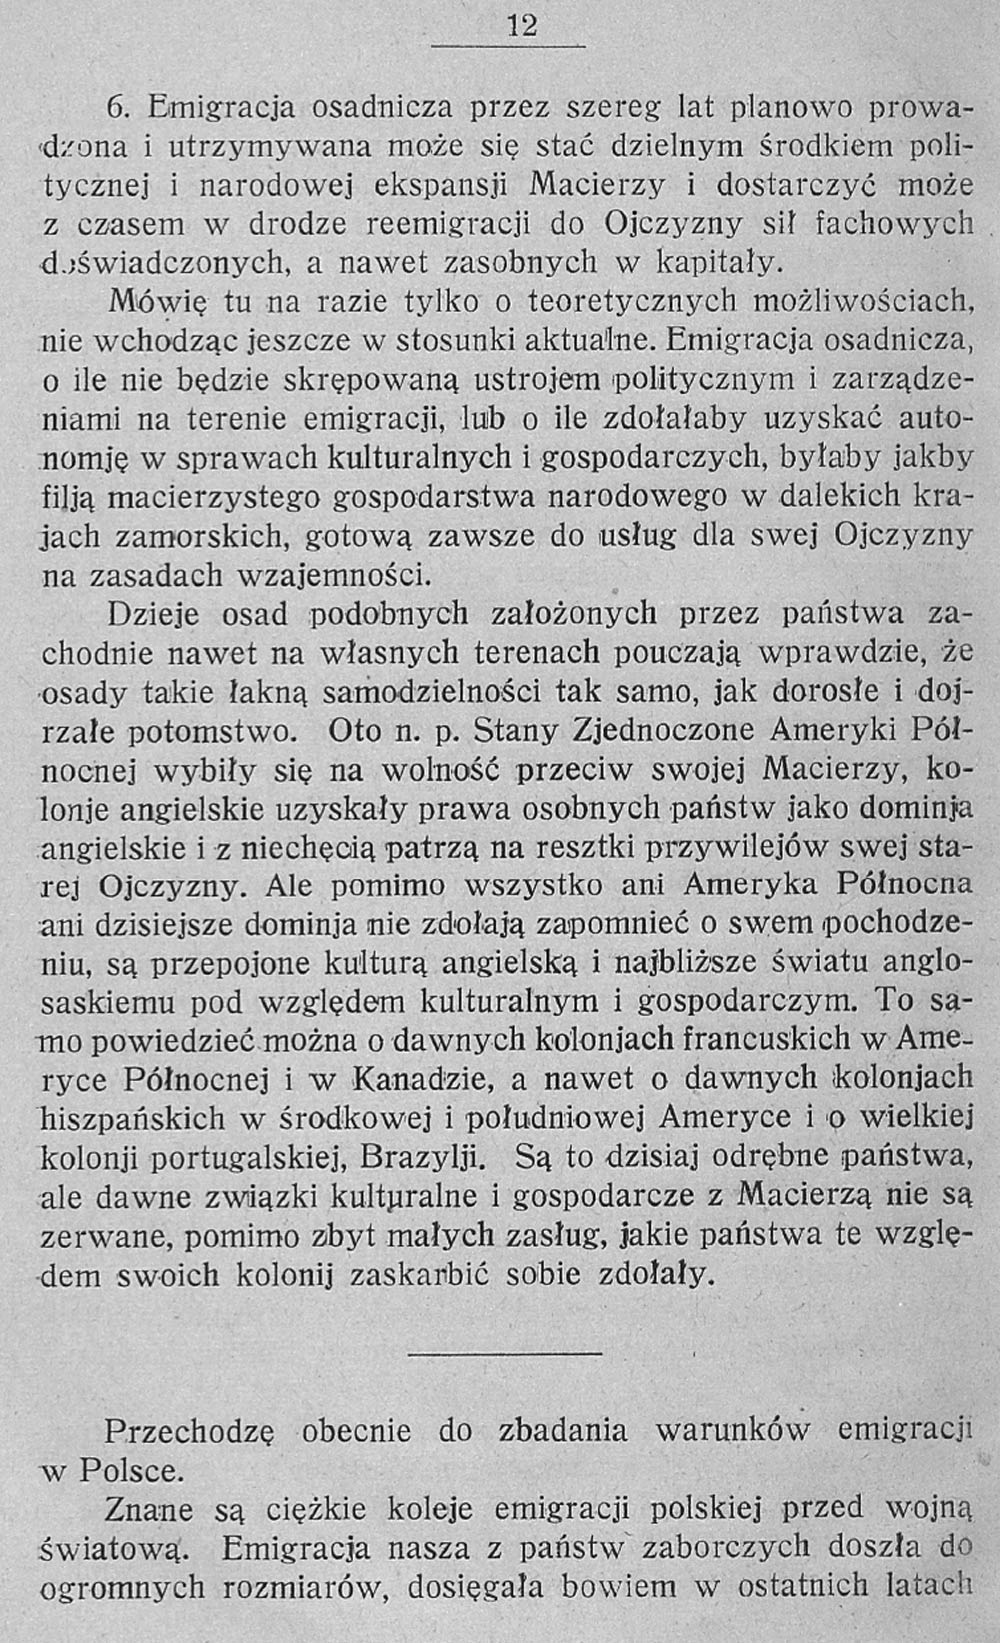 Emigracja i jej rola w gospodarstwie narodowem / Stanisław Głąbiński. - Warszawa:nakładem Naukowego Instytutu Emigracyjnego i Kolonjalnego. - 1931